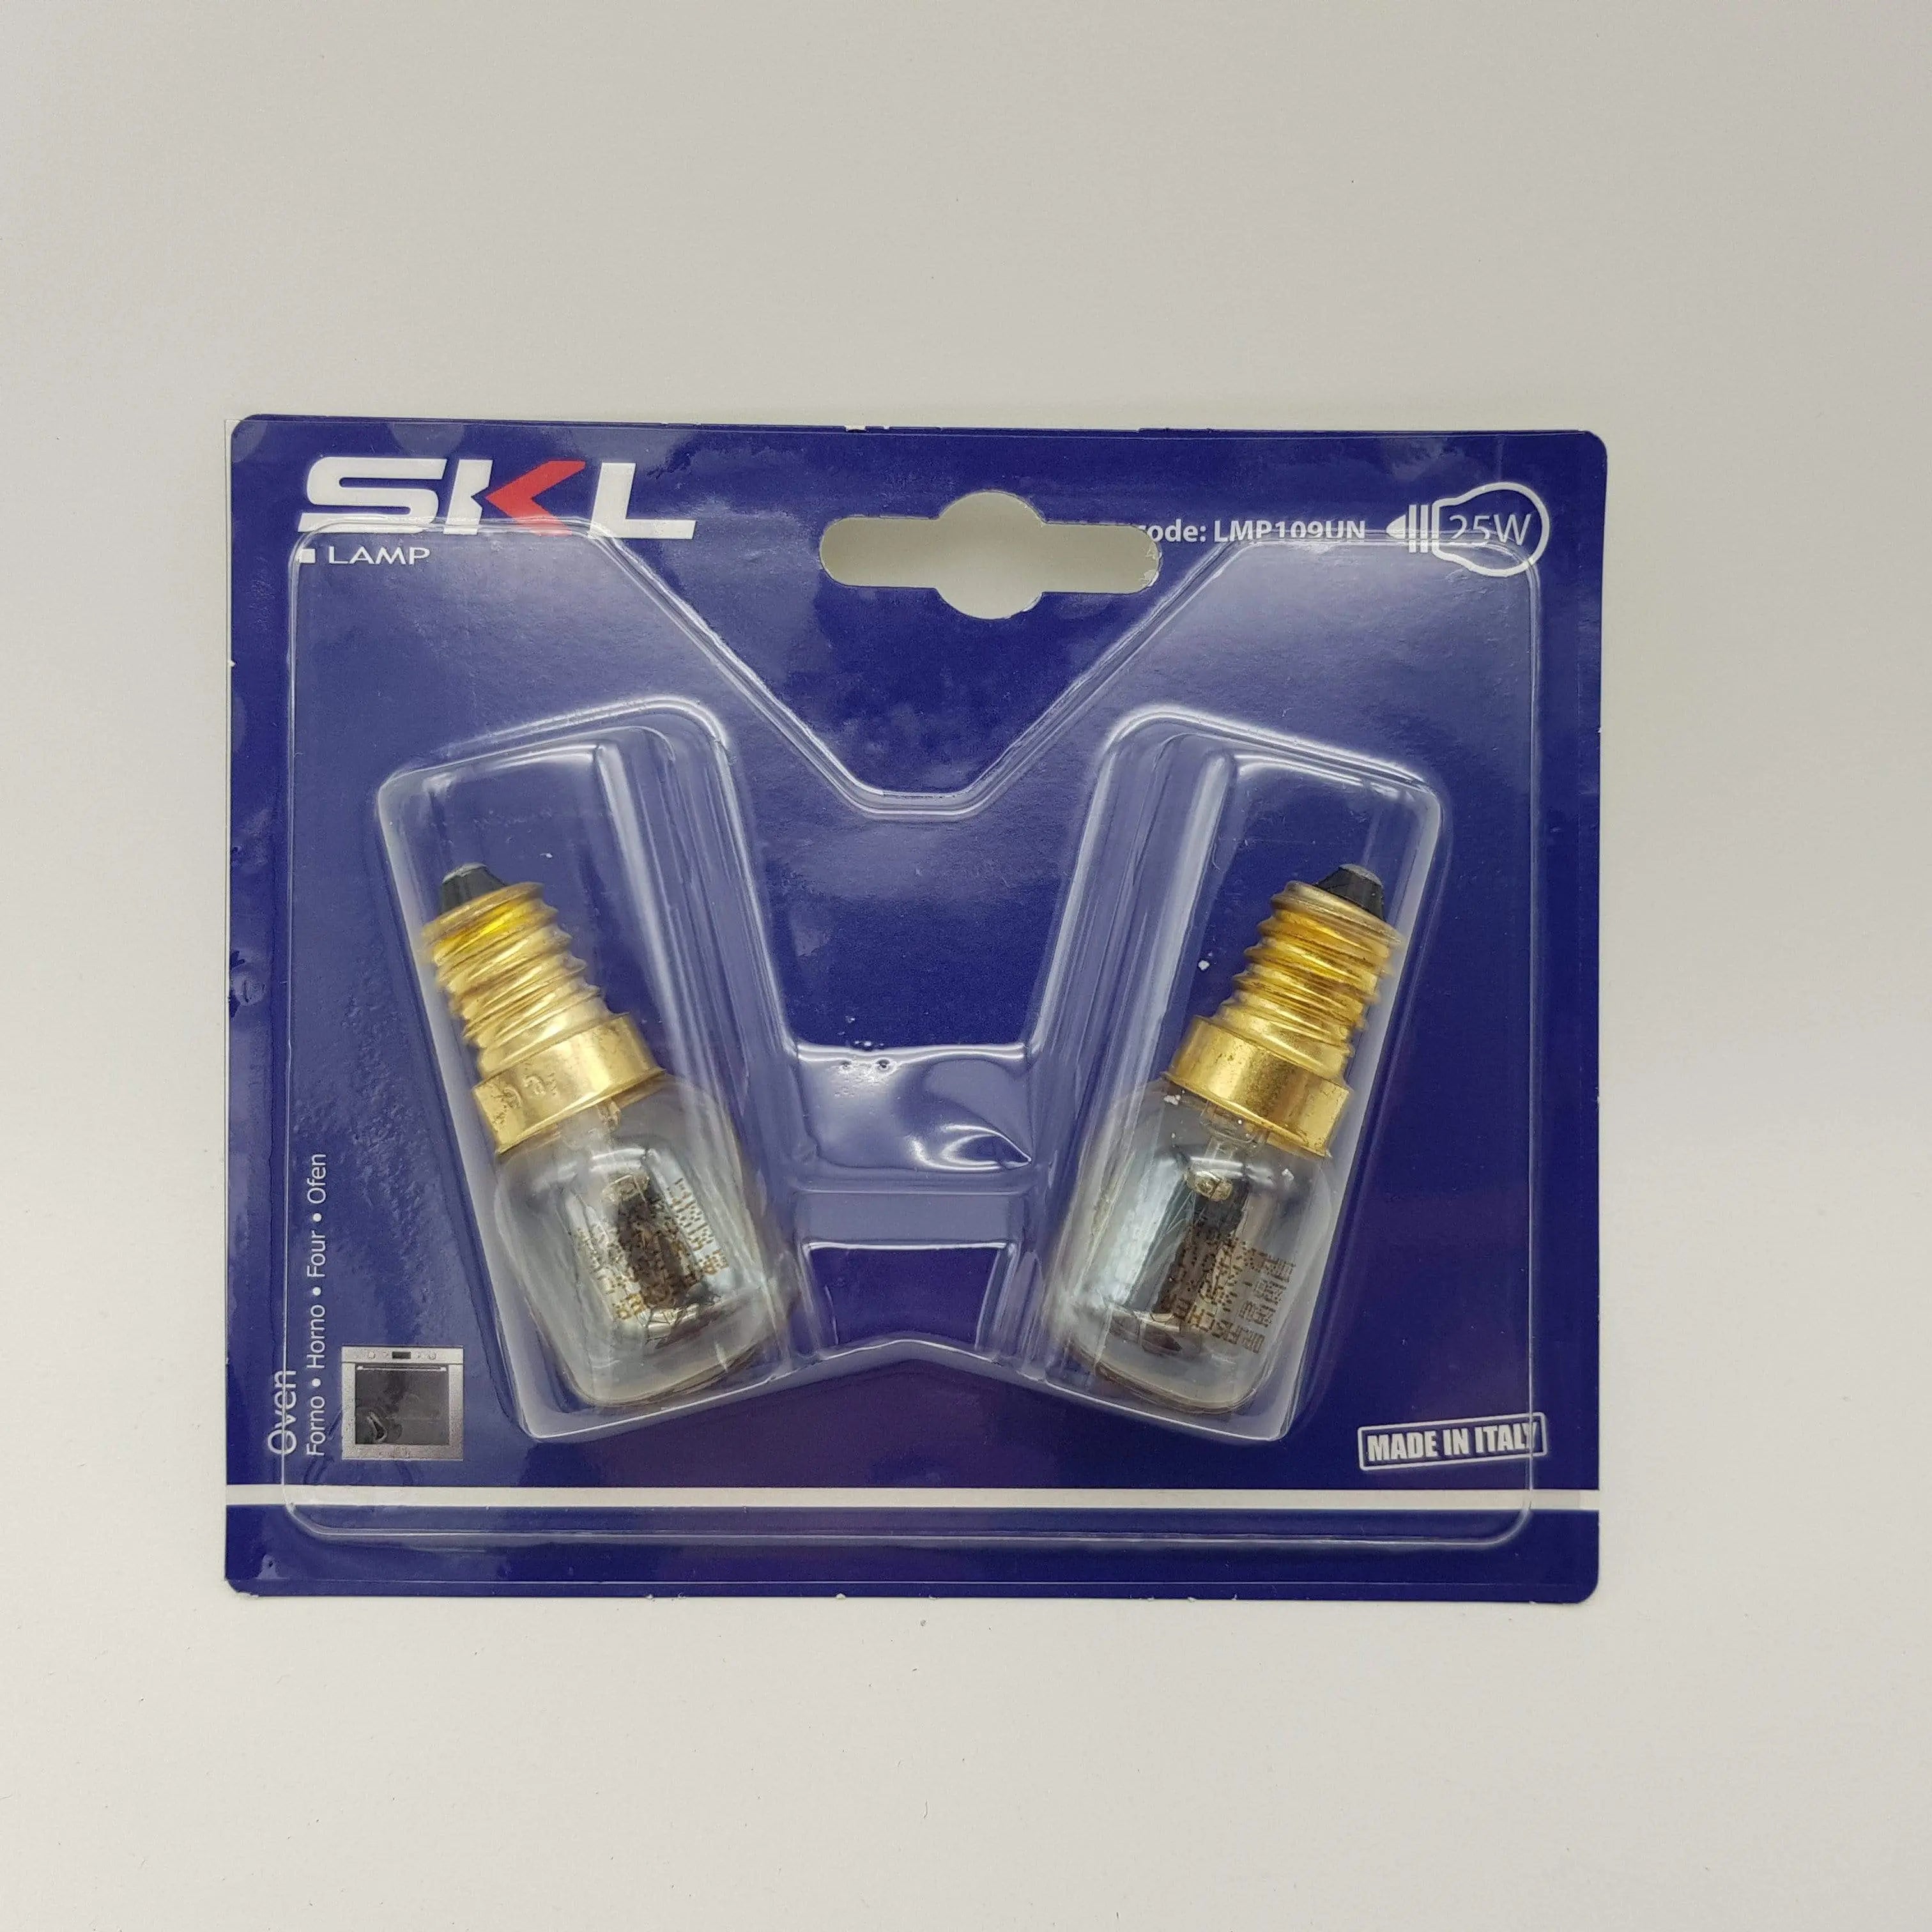 Blister 2 lampadine piccole pera per forno 300°c E14 25w SKL SKL